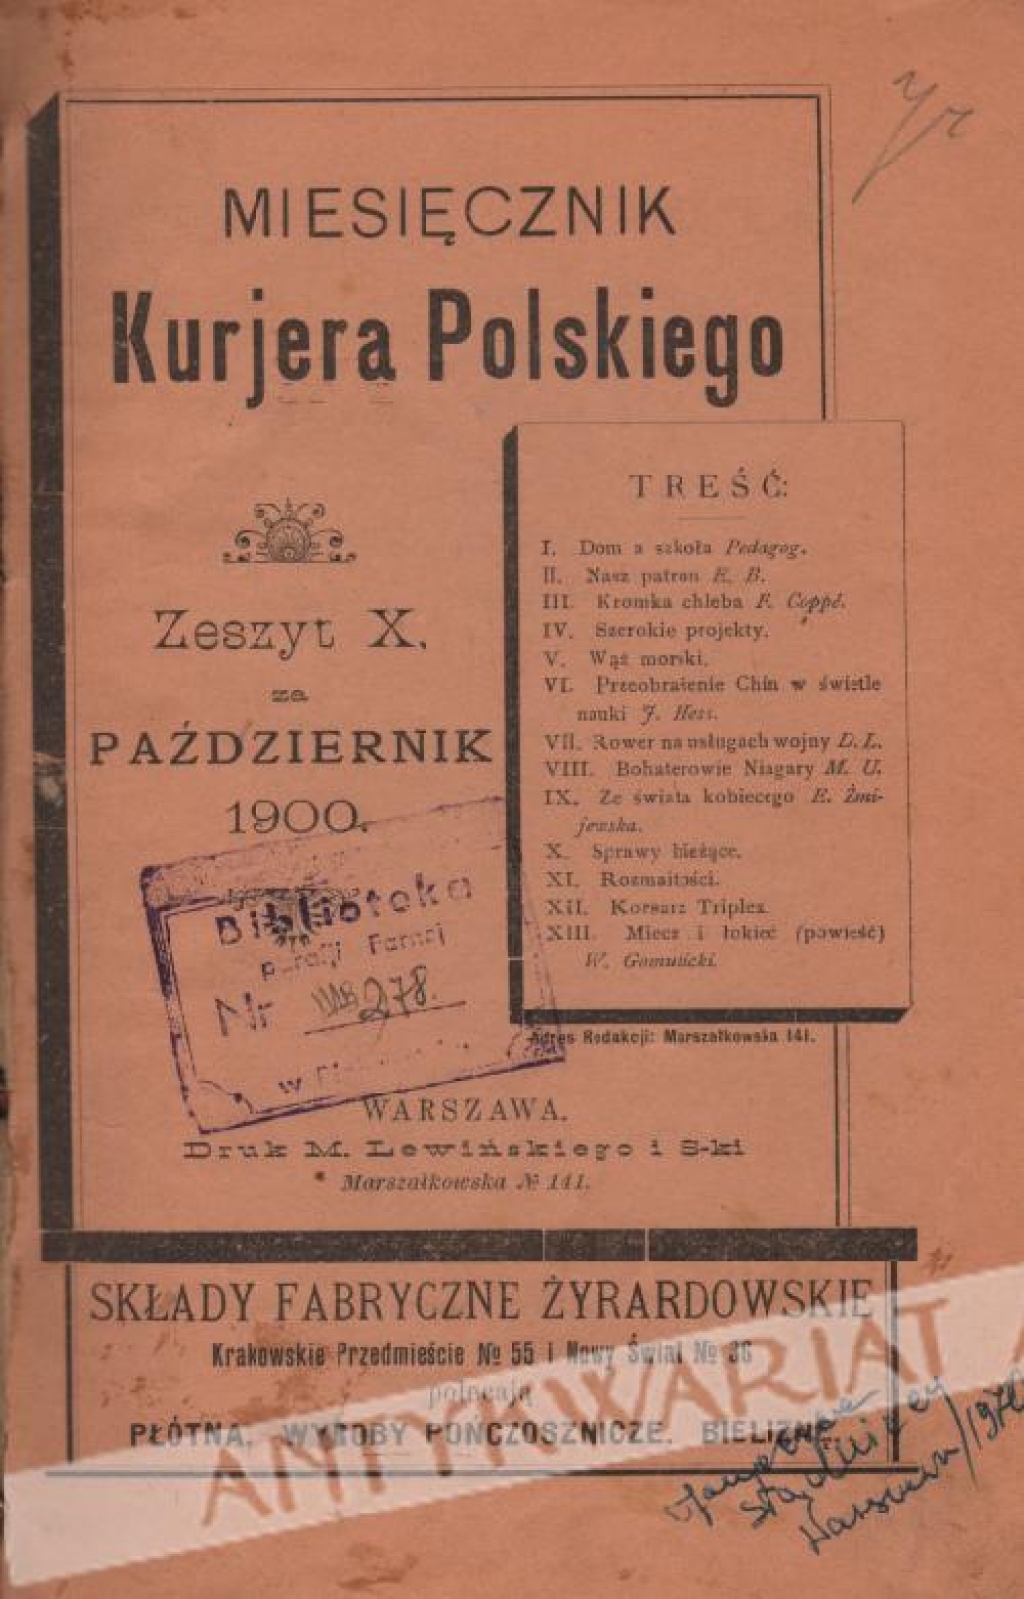 Miesięcznik Kurjera Polskiego, zeszyt X za październik 1900